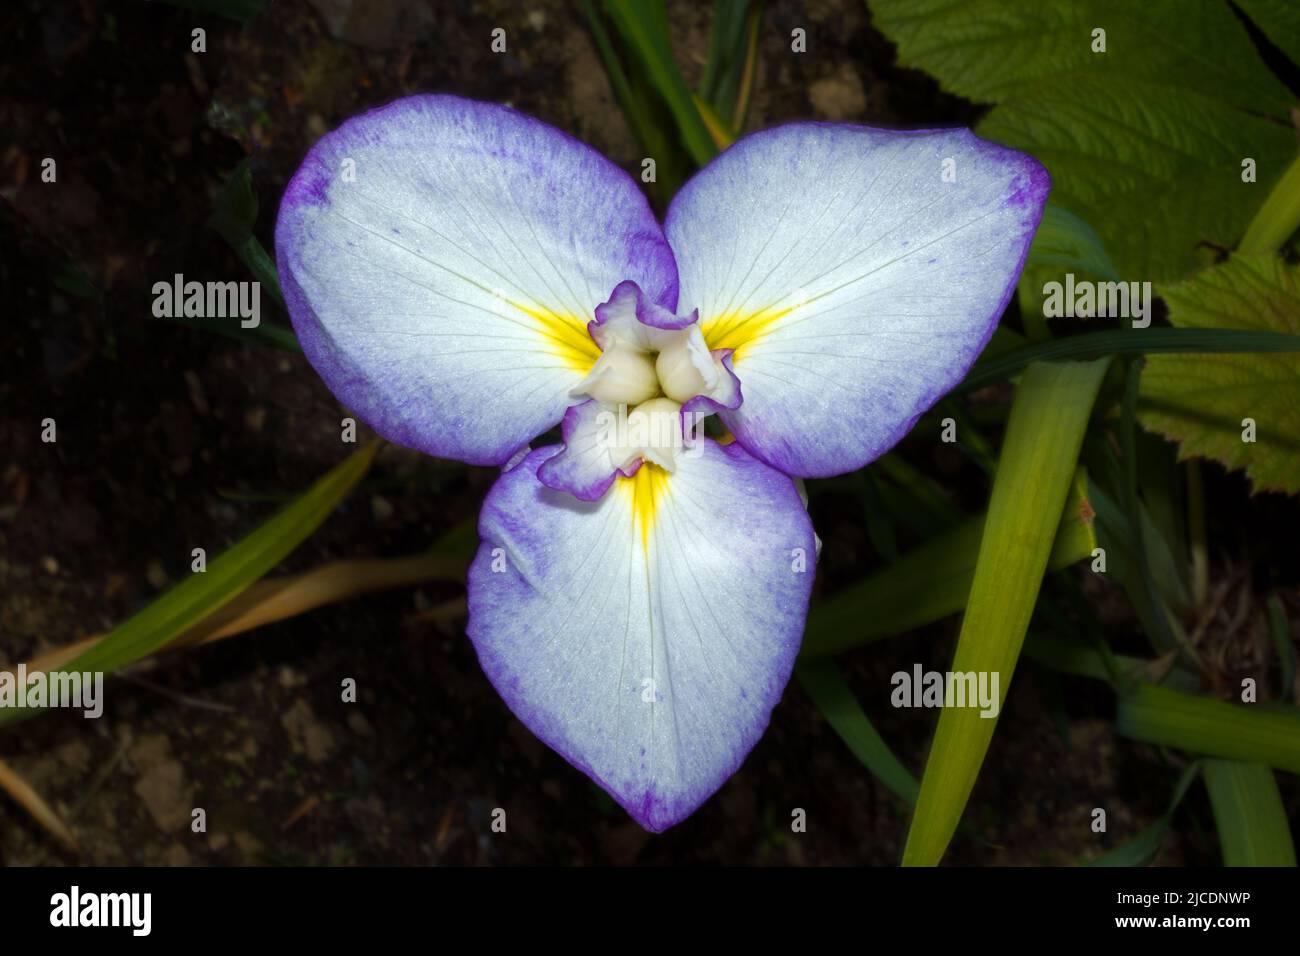 Iris ensata (iris acuático japonés) es nativo de Japón, China, Corea y Rusia, prefiriendo ambientes de joggy o pantanosos. Foto de stock